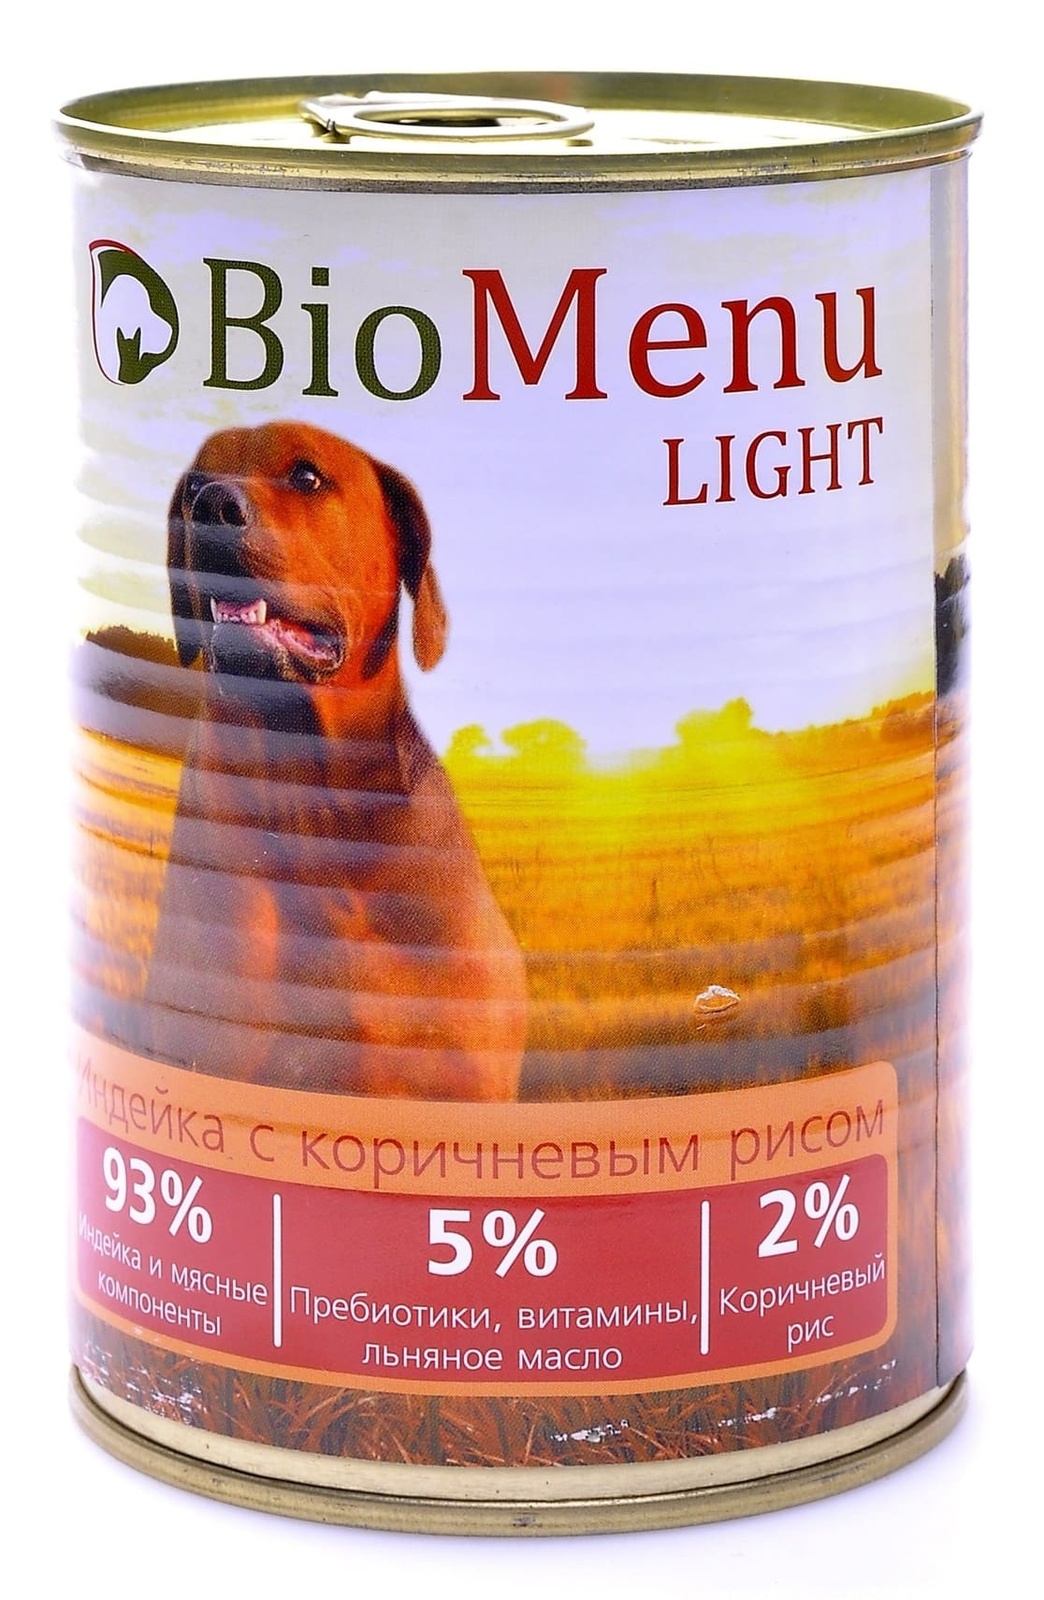 BioMenu BioMenu консервы для собак низкокалорийные с индейкой и коричневым рисом (100 г) biomenu biomenu консервы для щенков с говядиной 100 г